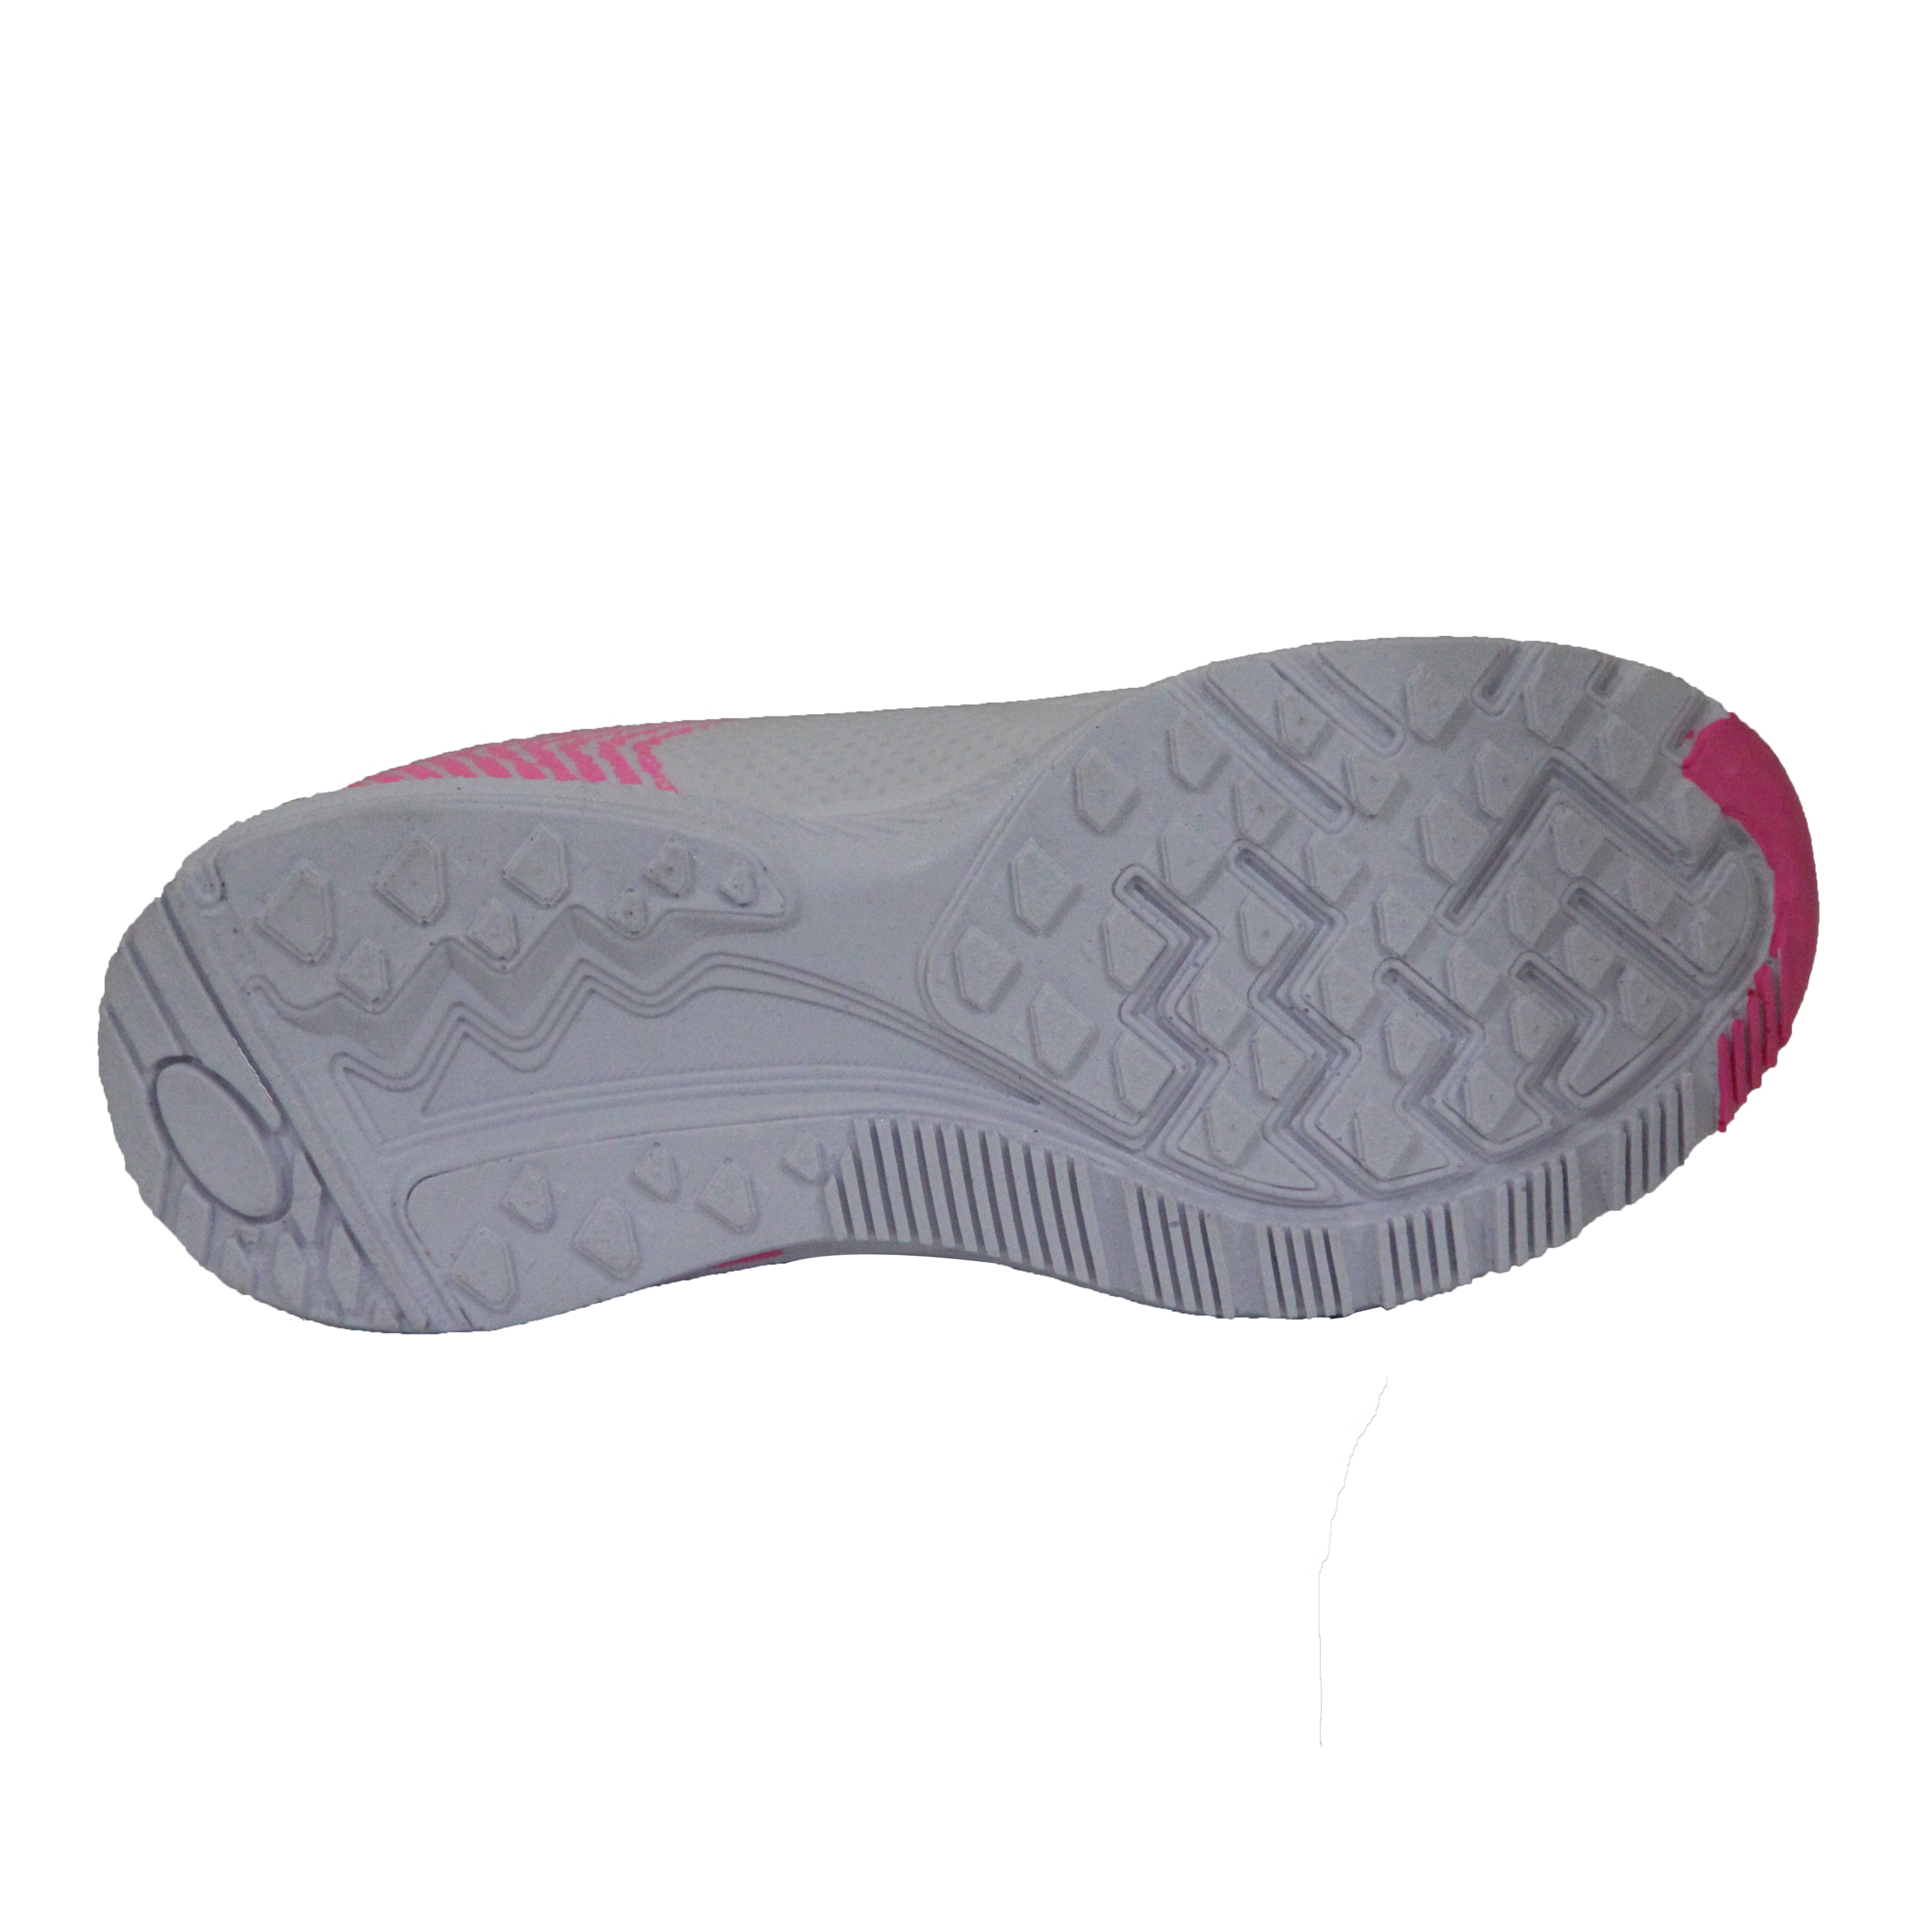  کفش مخصوص پیاده روی زنانه کد 96-P40004